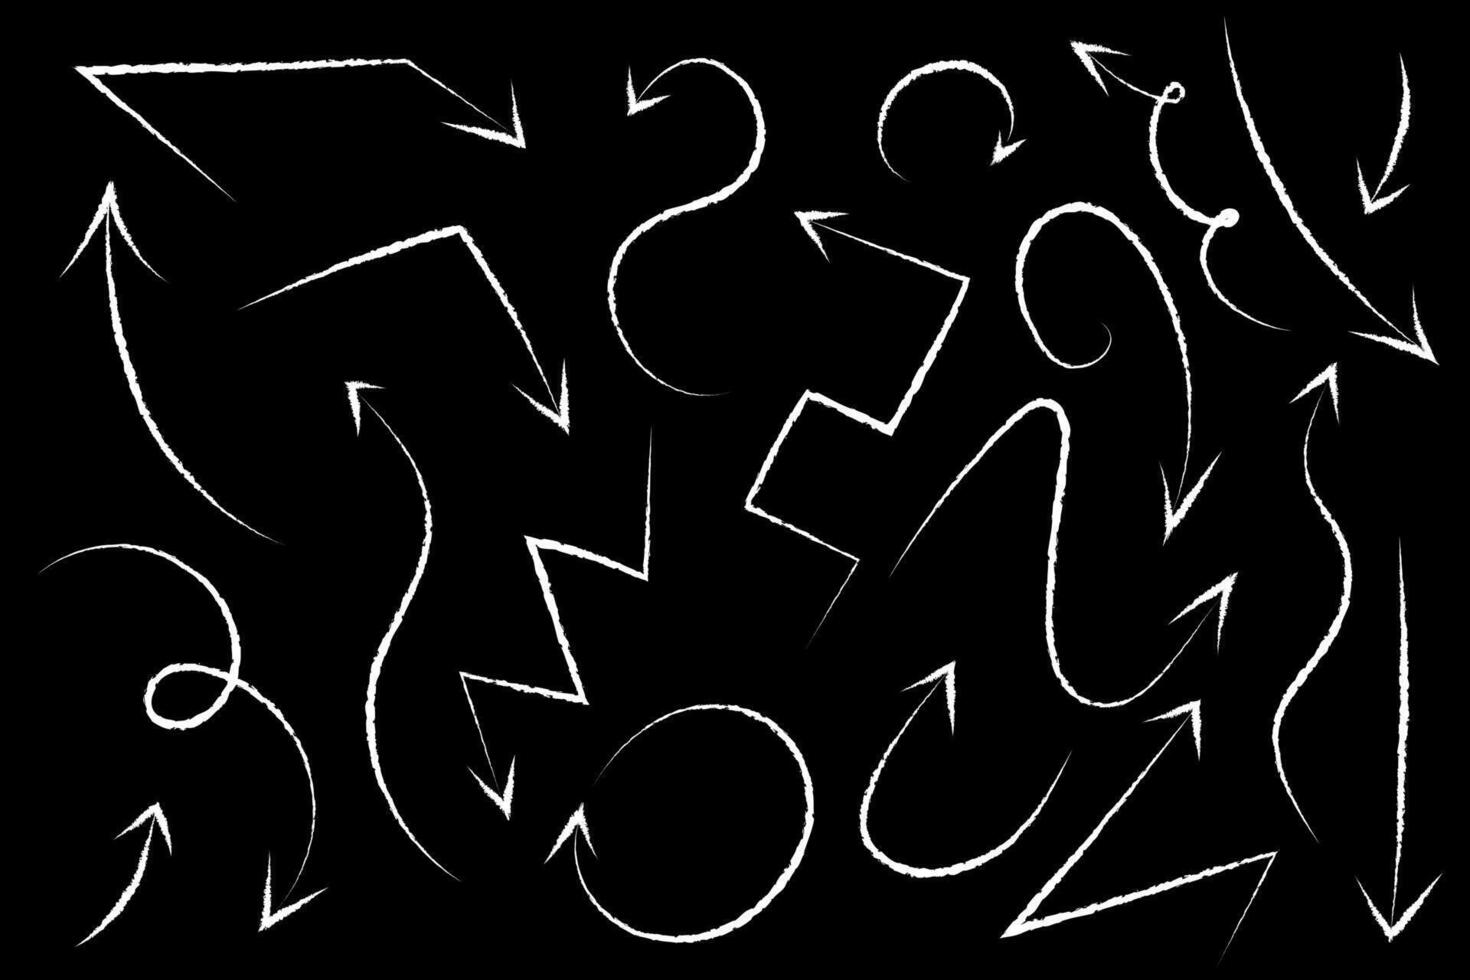 conjunto de flechas dibujado con tiza en pizarra. diferente tipos de señales en oscuro antecedentes - zigzag, ola, doblar. colección de dirección simbolos contorno bosquejo. blanco negro imagen. ilustración vector